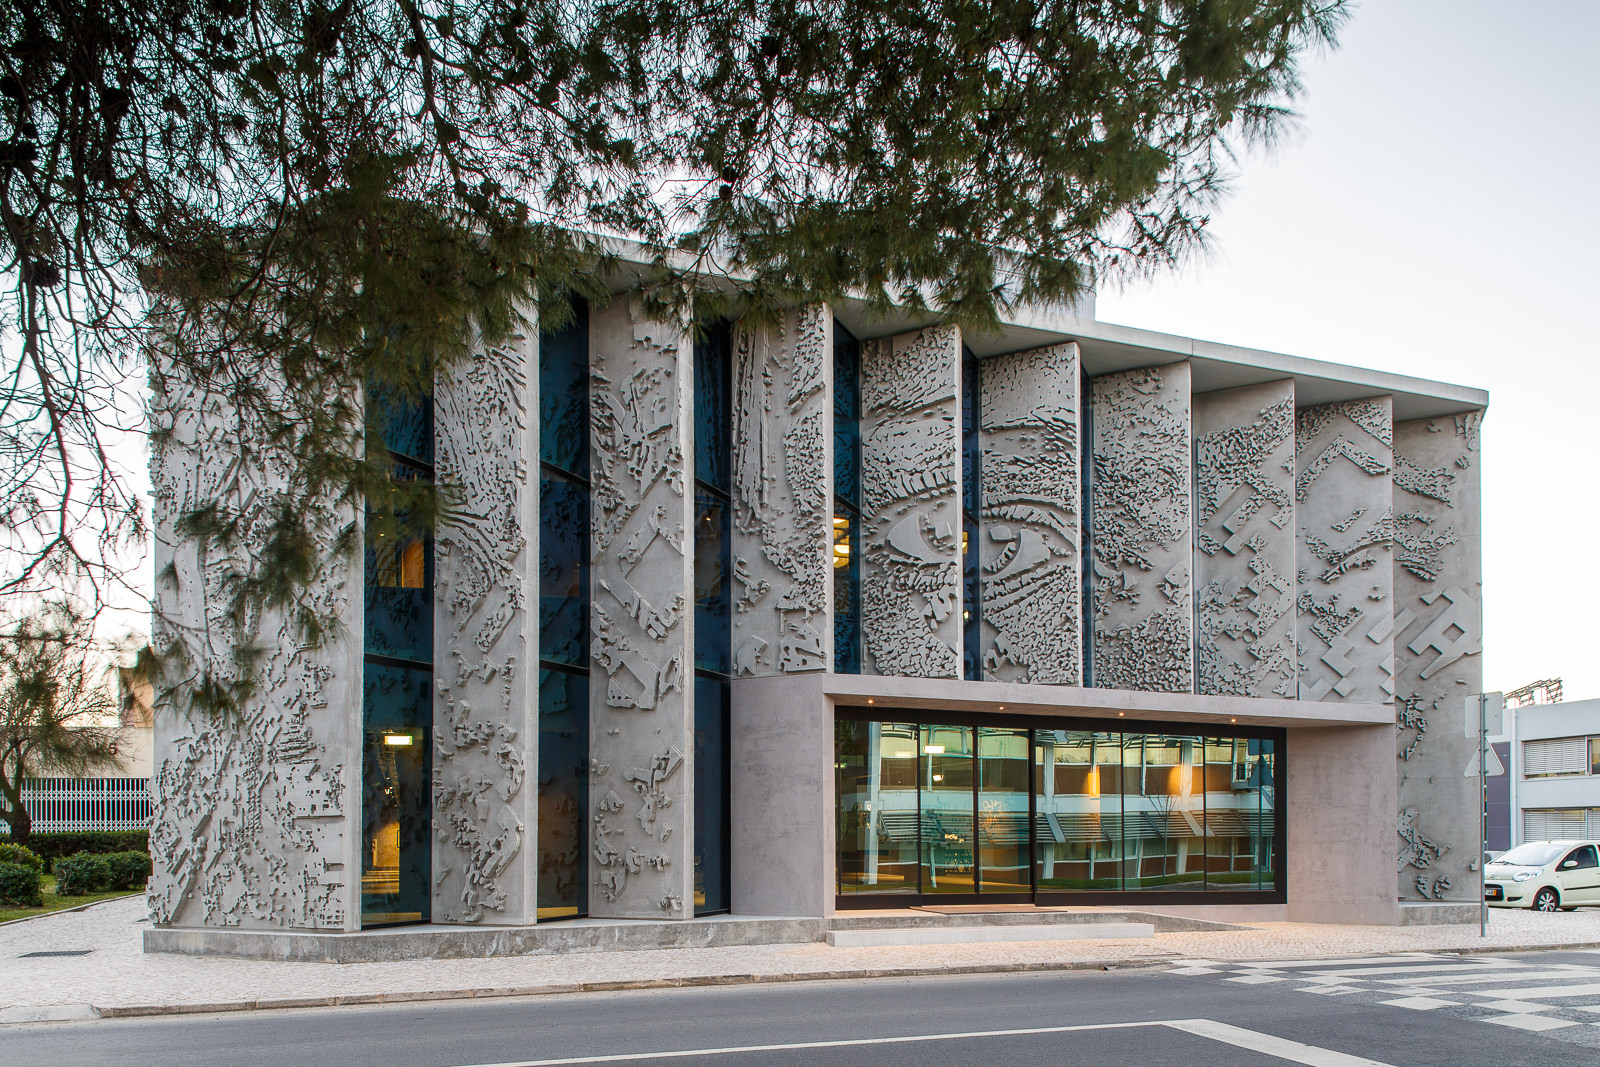  Edifício sede GS1 Portugal, intervenção de Vhils na fachada, Lisboa 